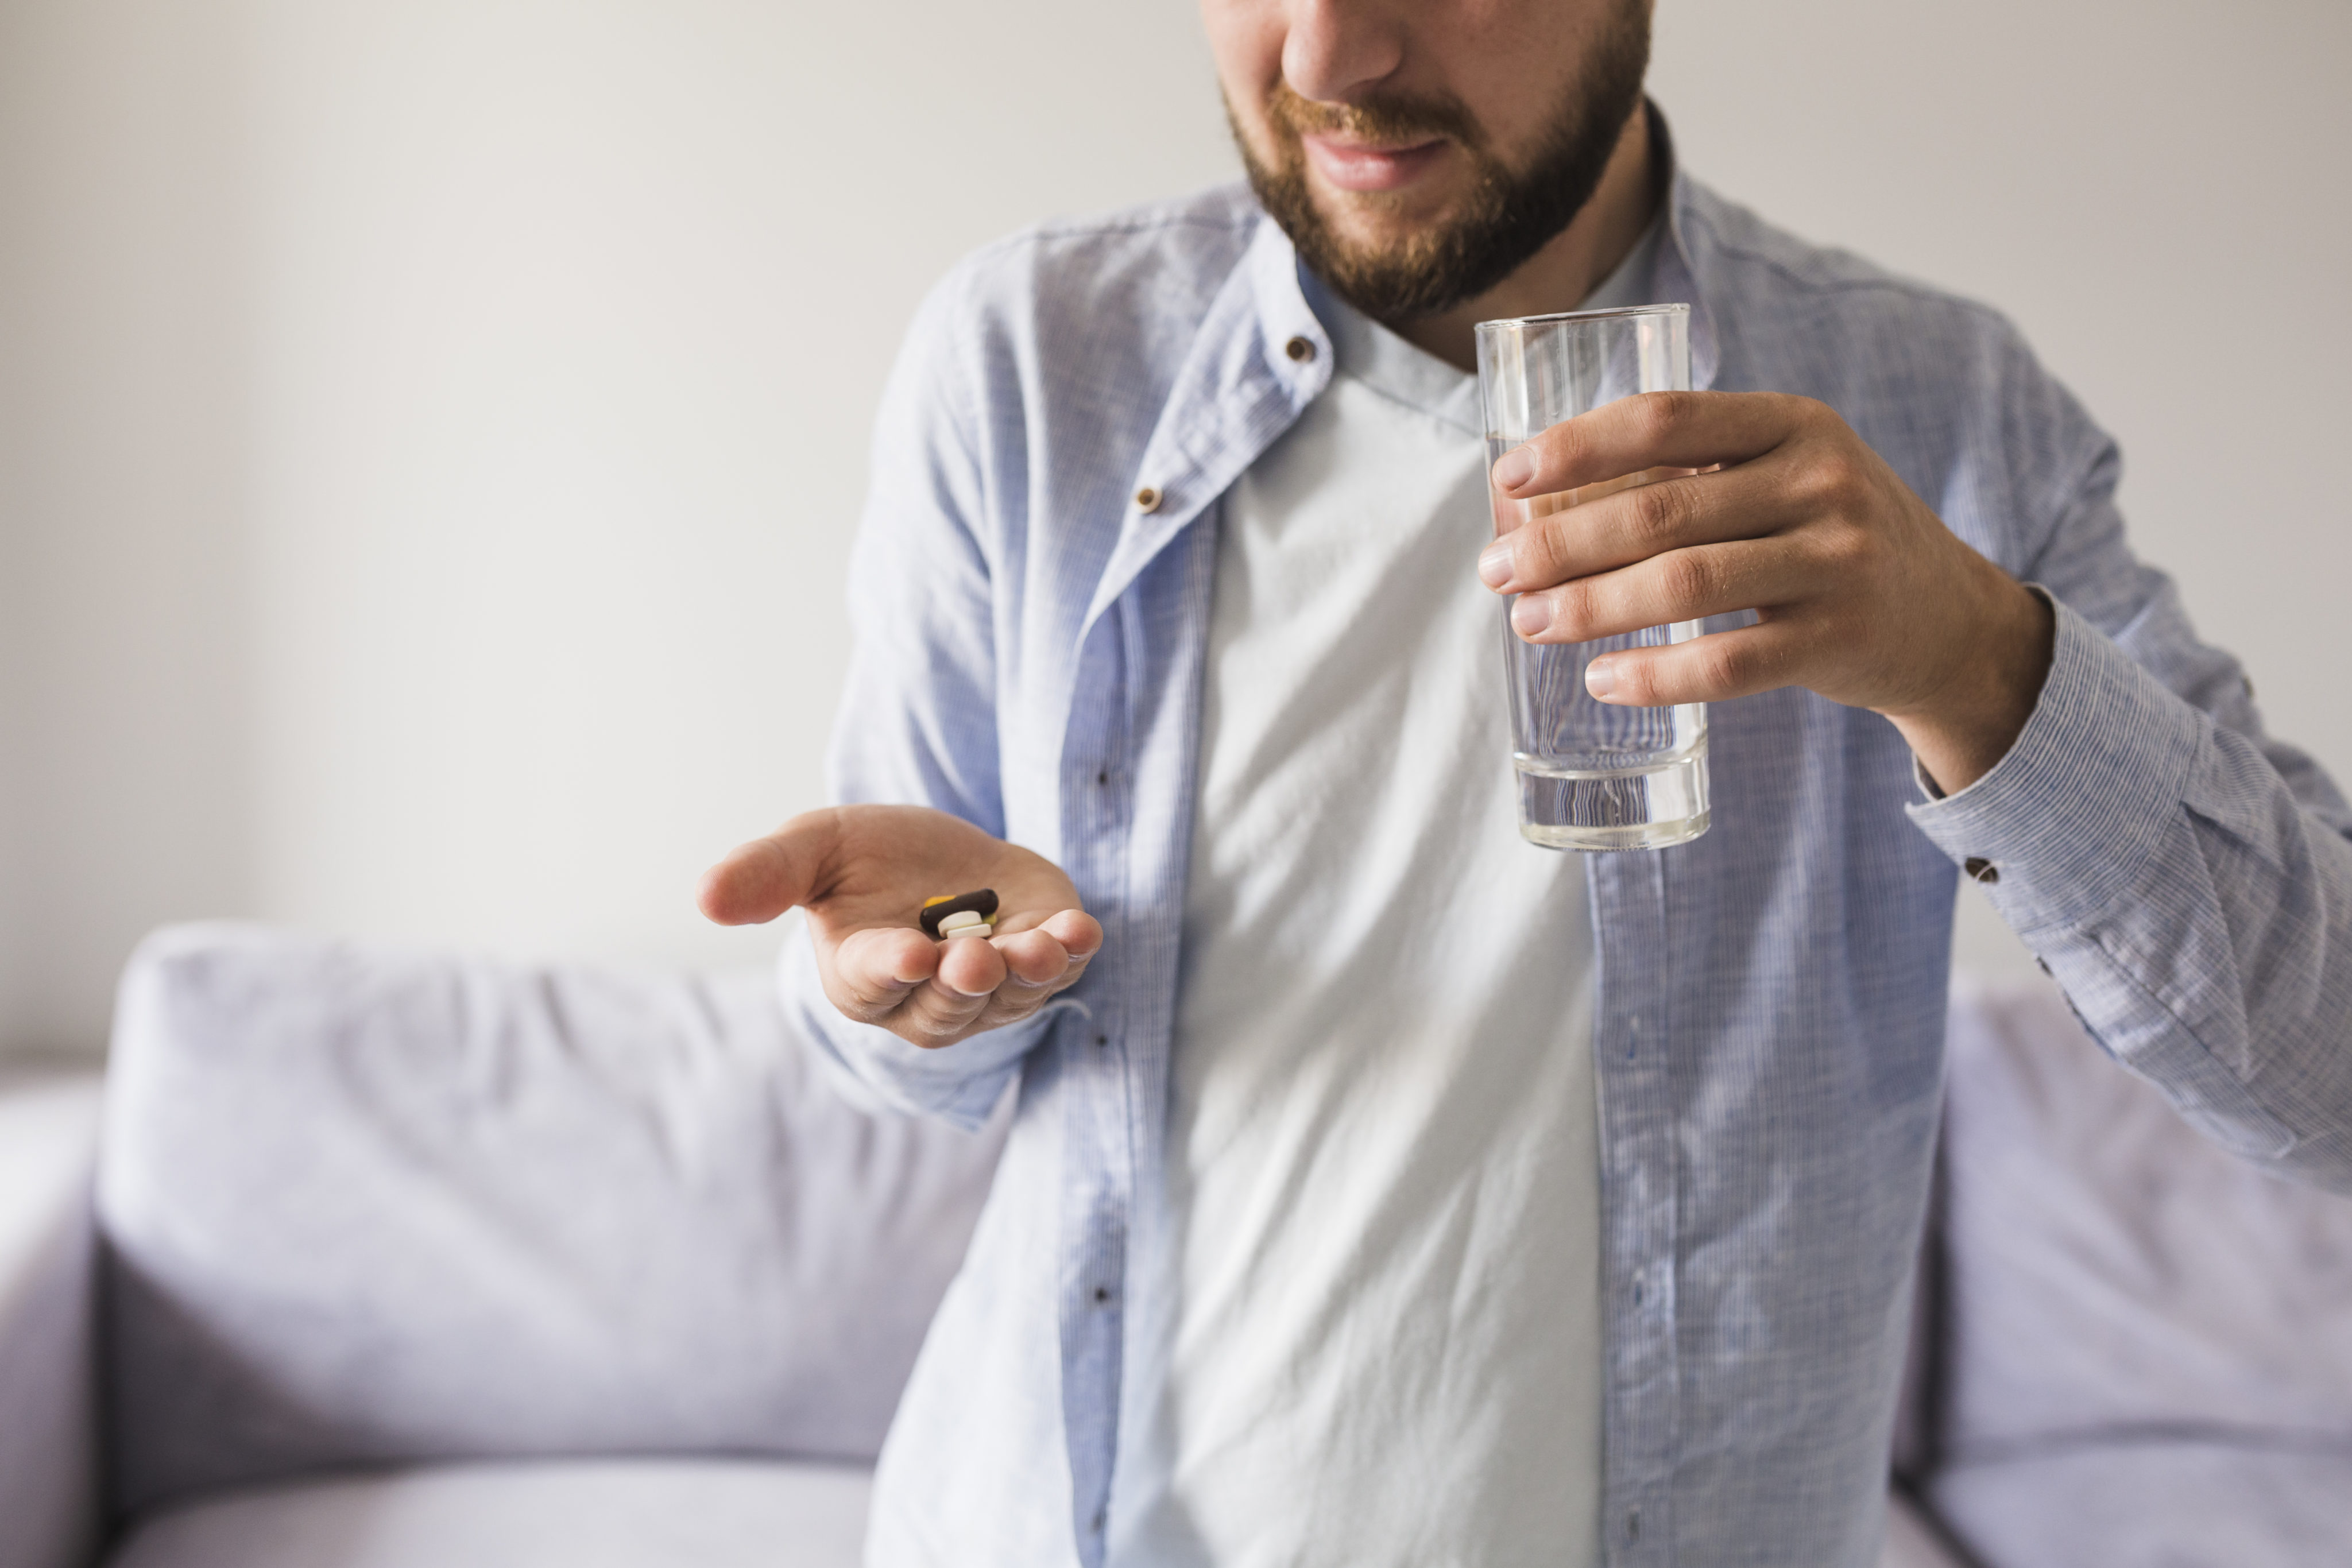 homem de pele branca, veste camiseta branca e camisa azul aberta por cima. Na mão direita segura alguns medicamentos e na mão esquerda um copo de vidro com água.